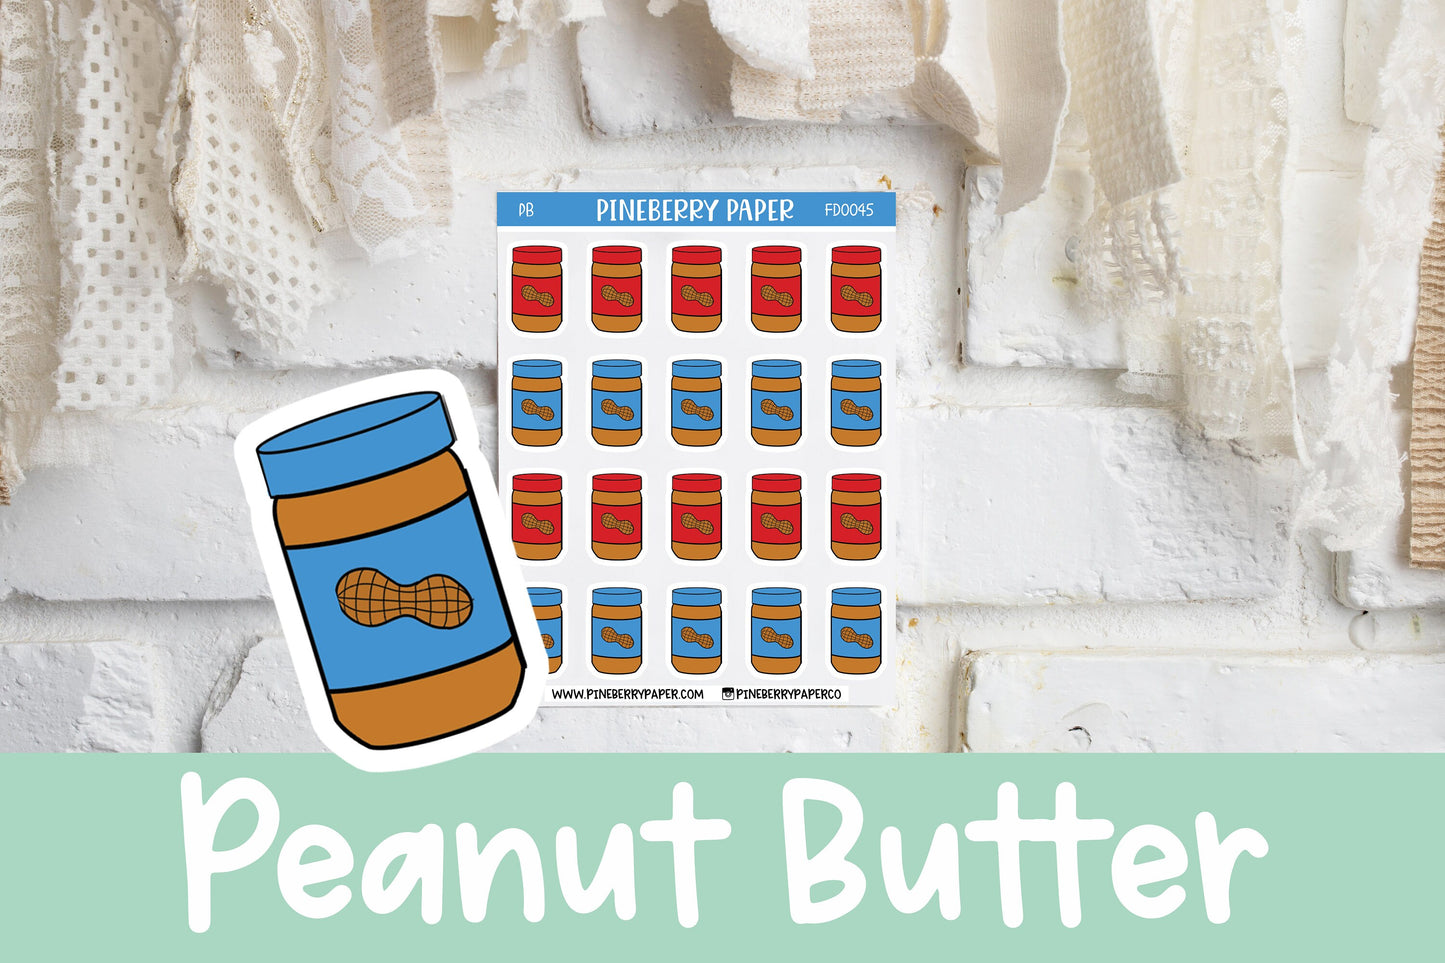 Peanut Butter | FD0045